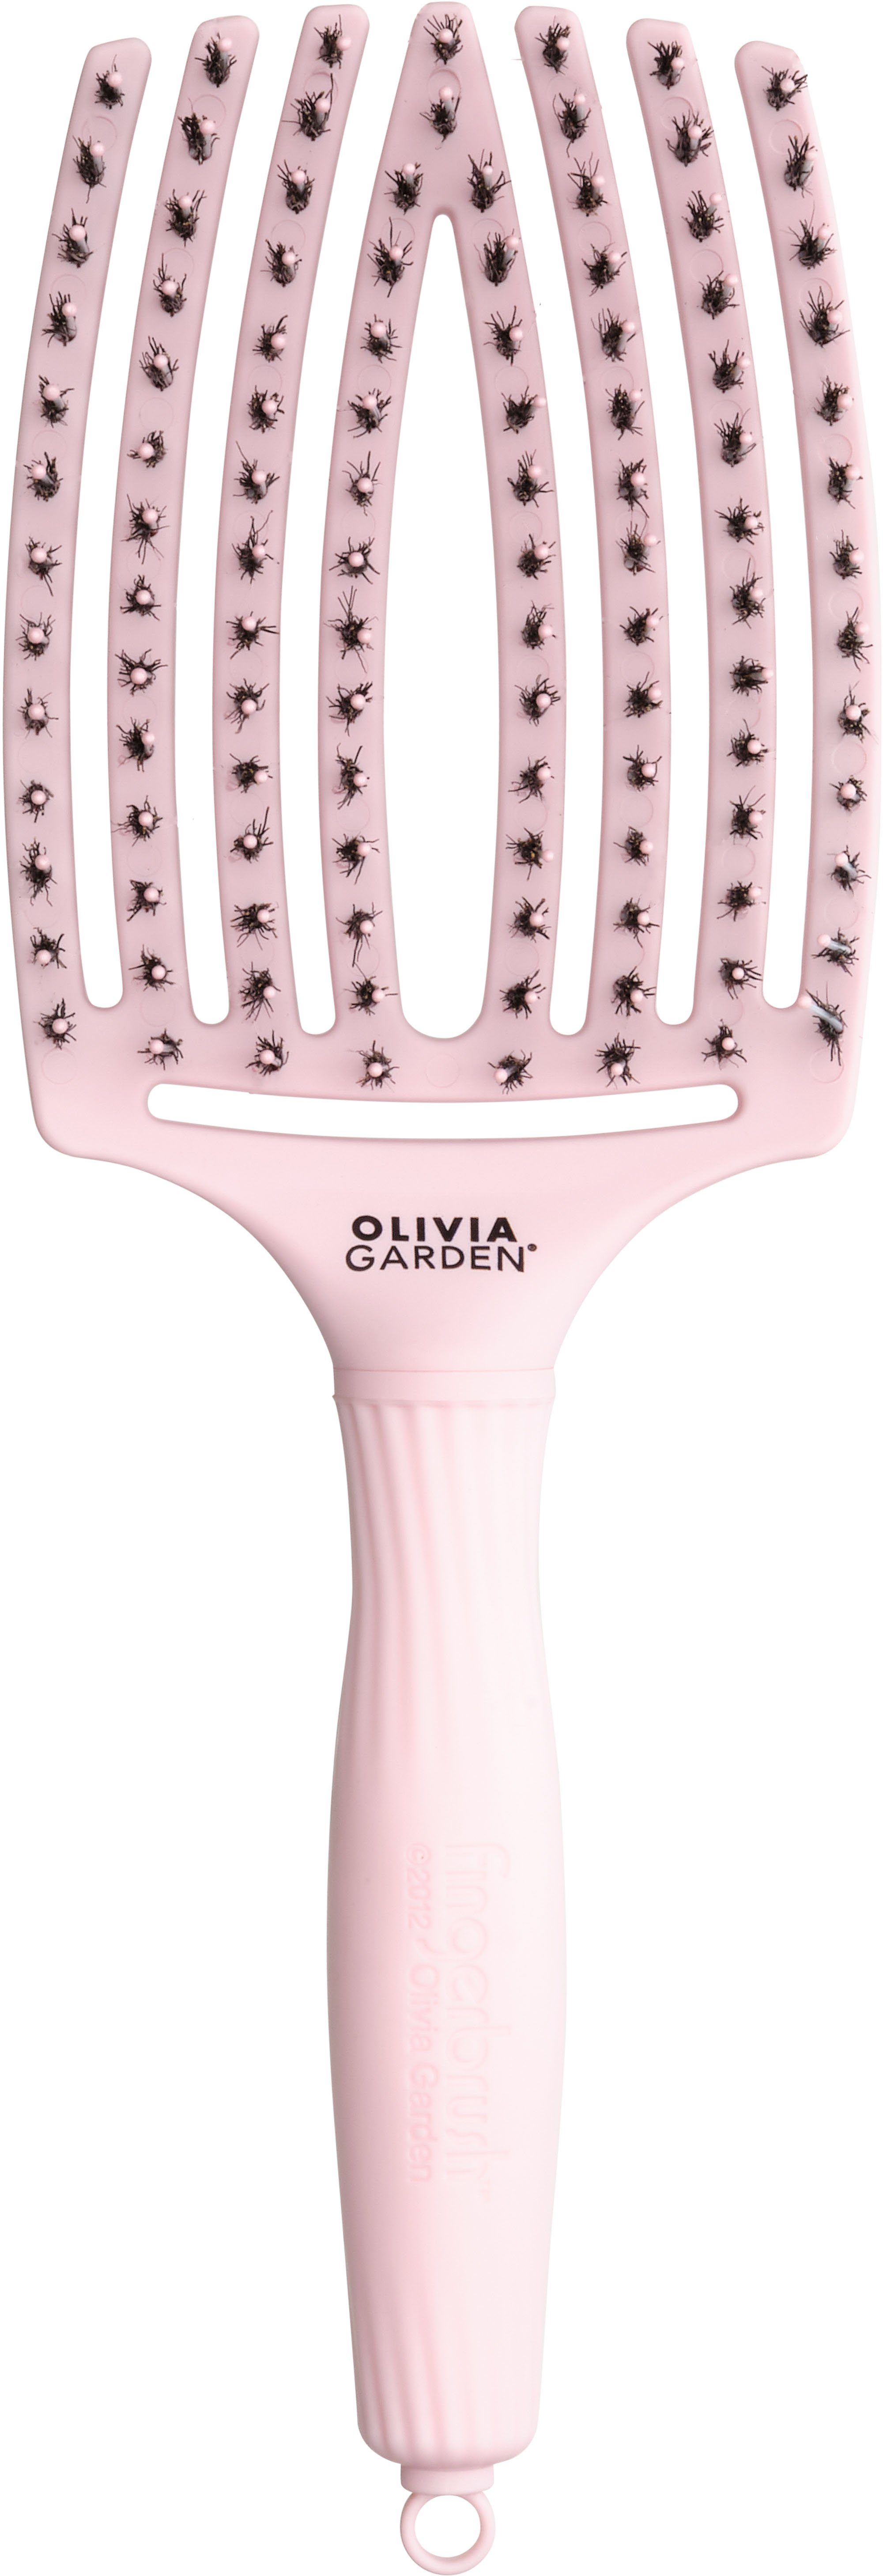 OLIVIA GARDEN Haarentwirrbürste Fingerbrush Combo Pink large | Haarbürsten